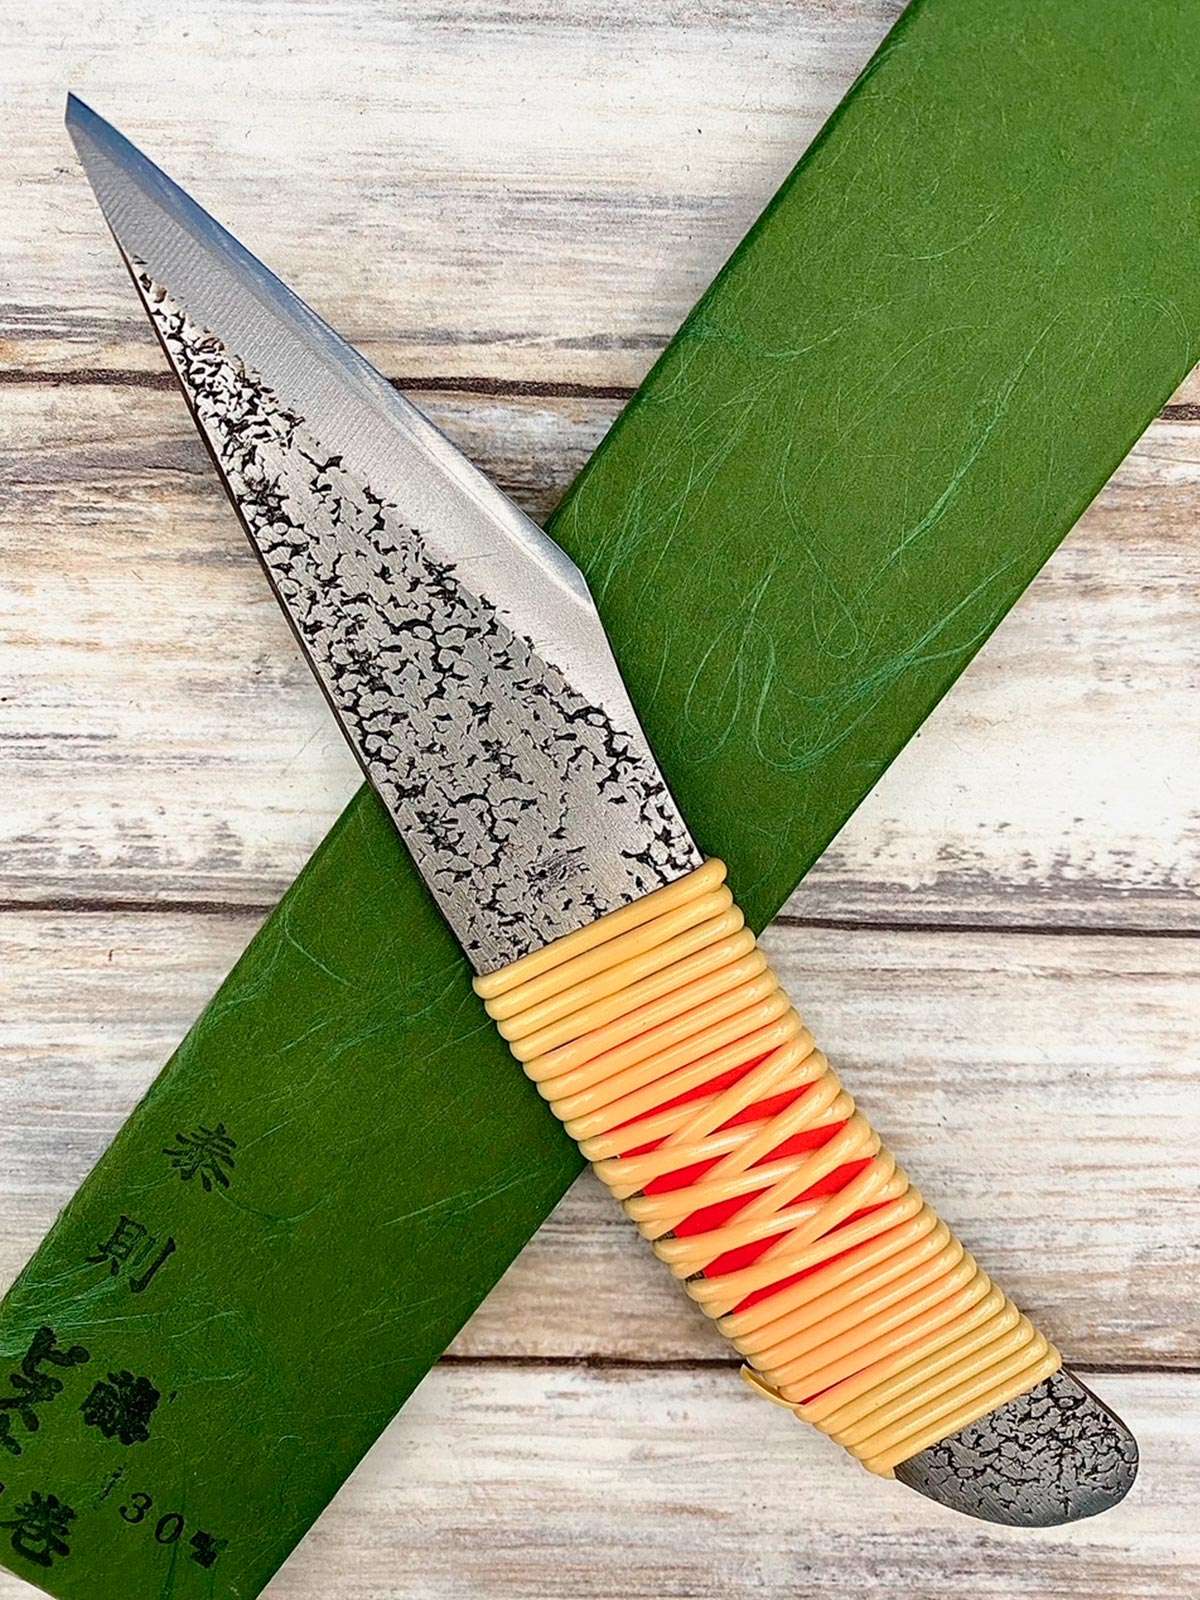 Acheter un Couteau de poche Japonais artisanal Kiridashi (bois carton.. EDC) à Paris meilleur vente de couteaux utilitaire nippon grande marque de qualité